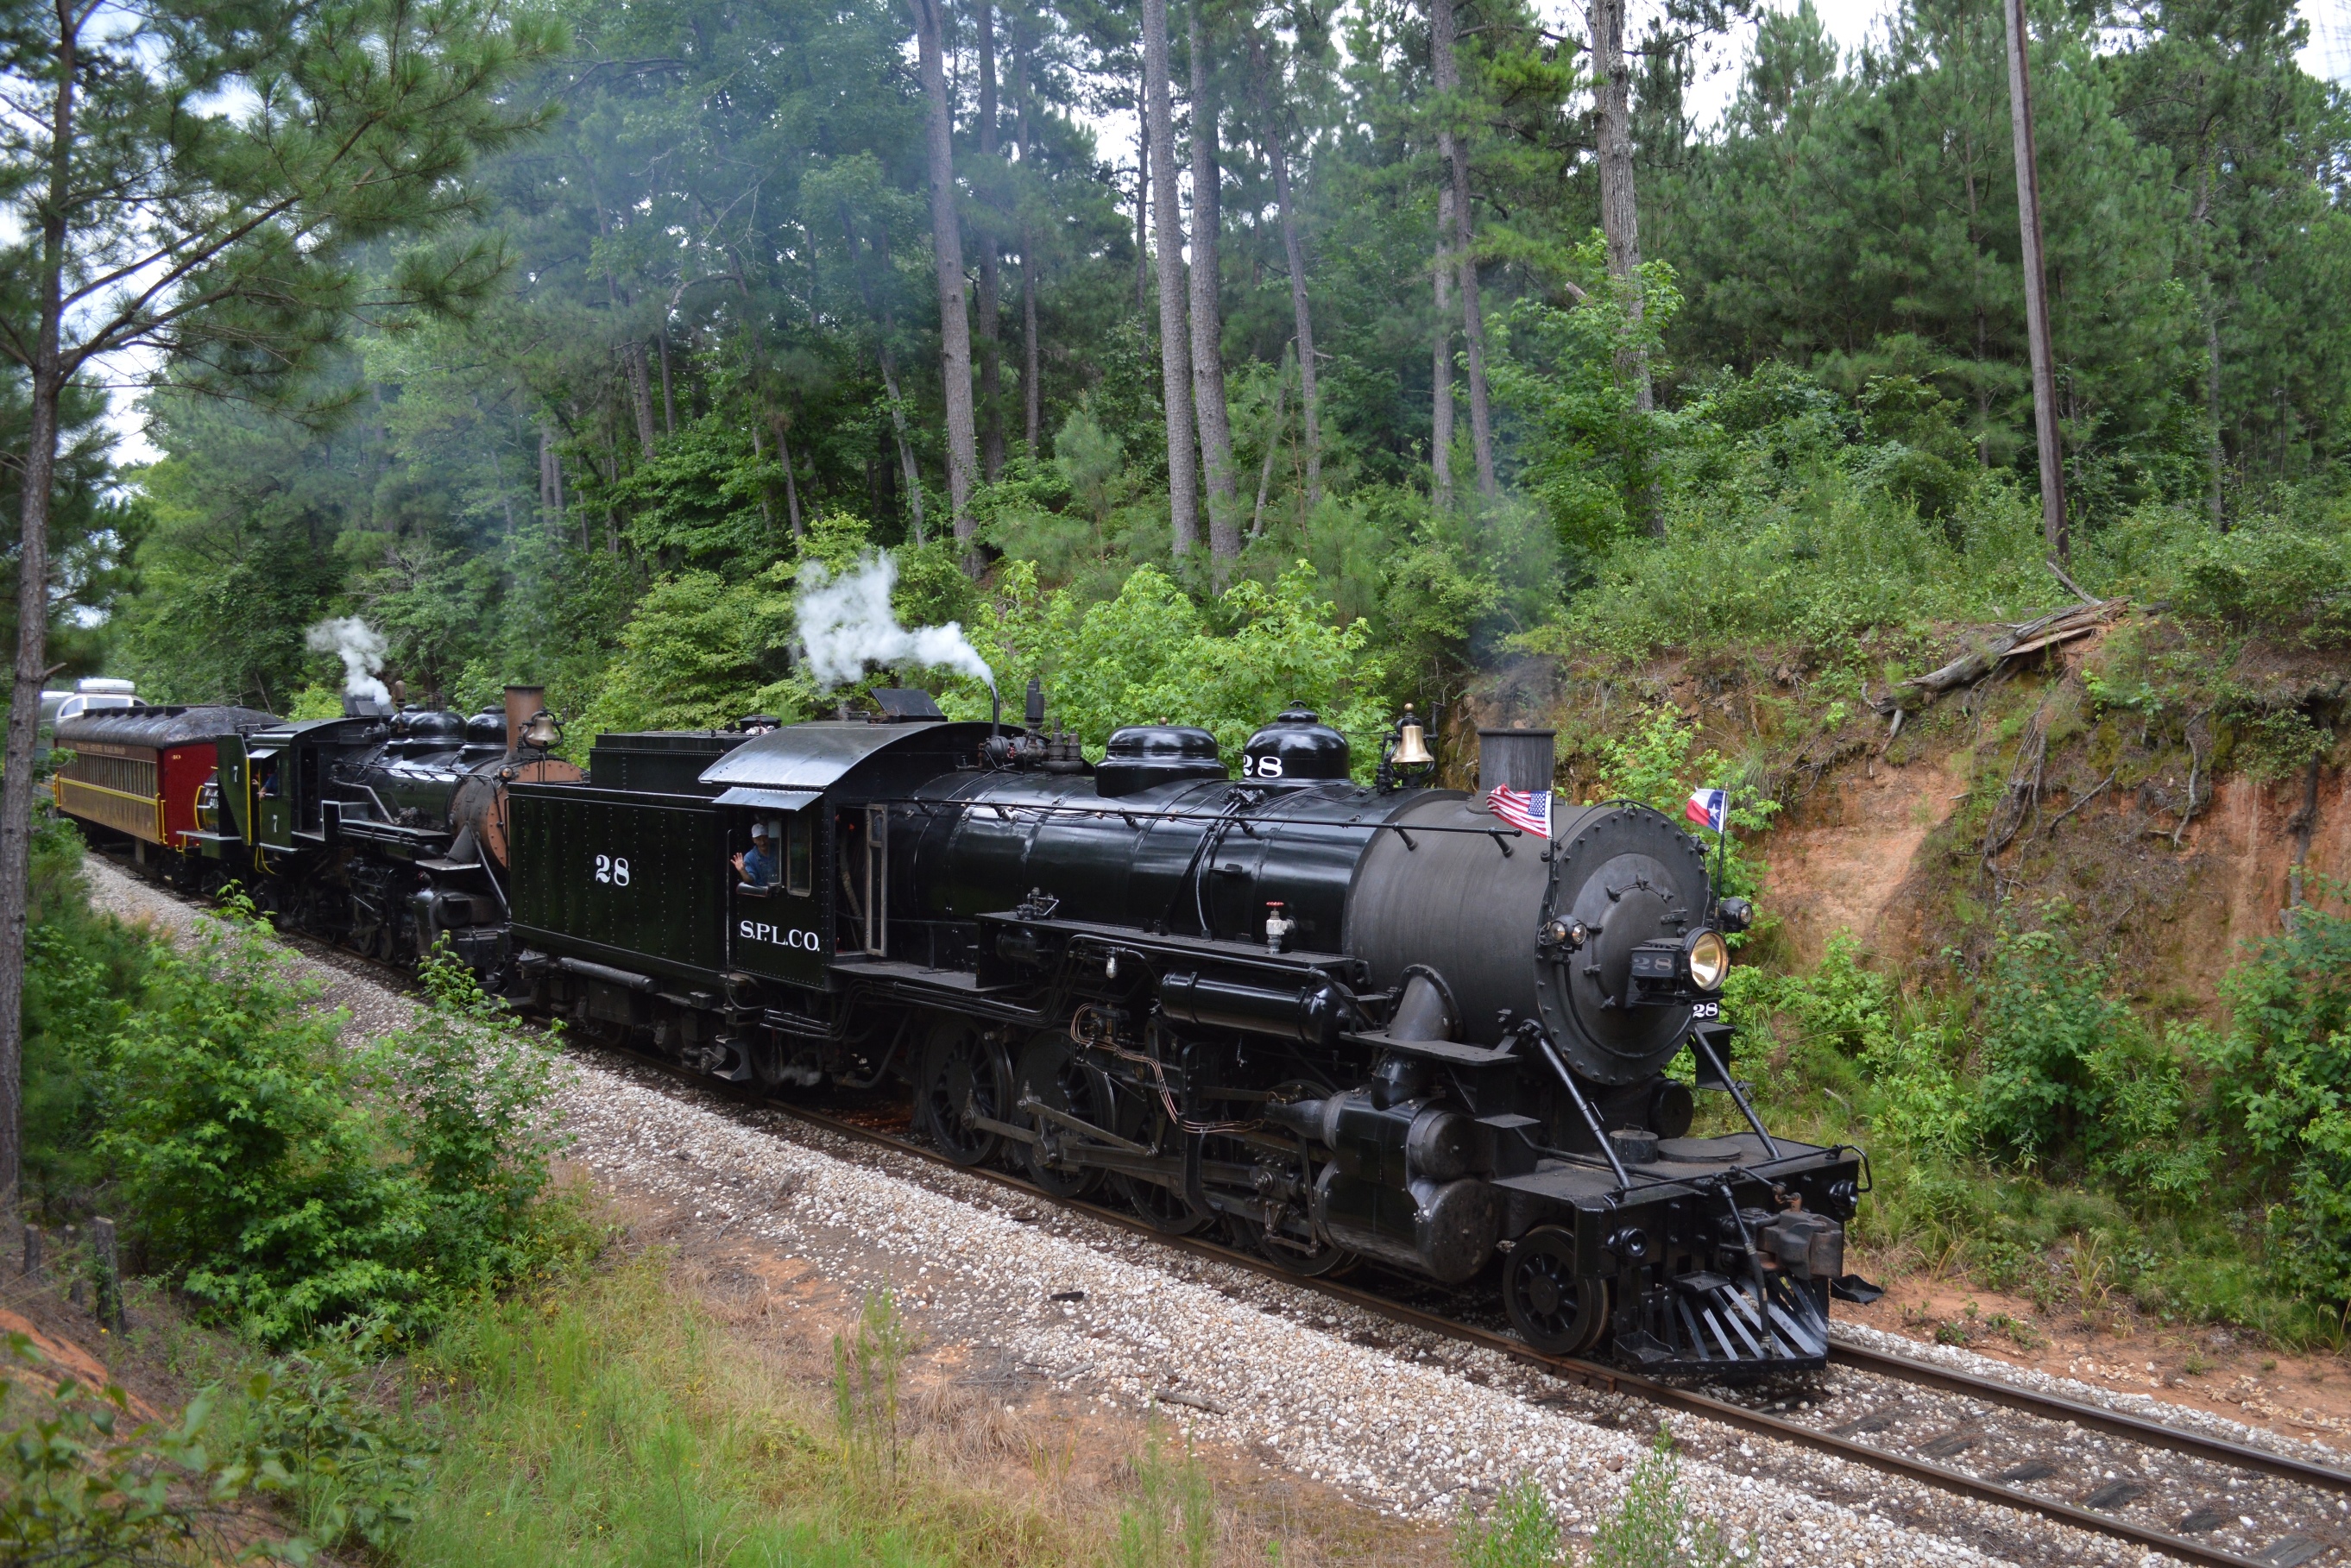 Piney Woods Express Steam